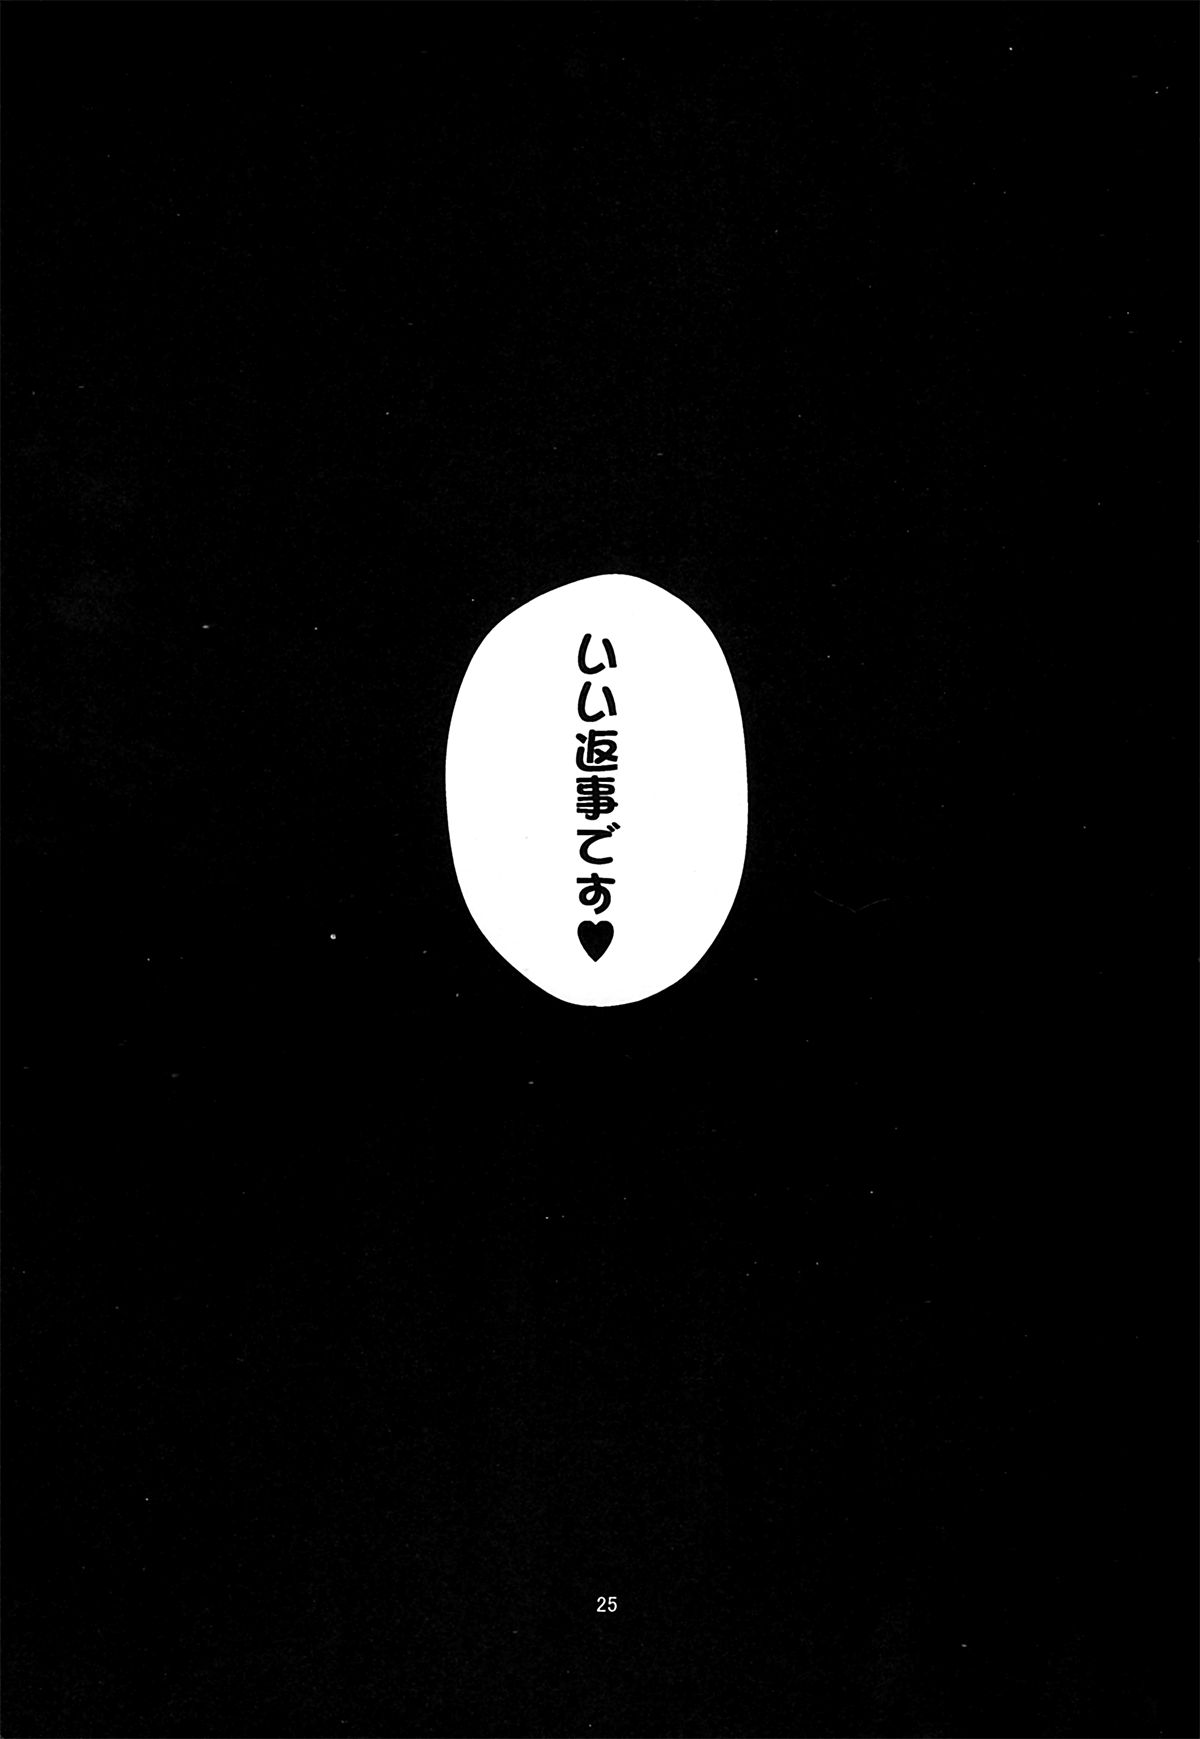 (C84) [はぴねすみるく (おびゃー)] 肉欲神仰信 - I am semen addict - (東方Project)